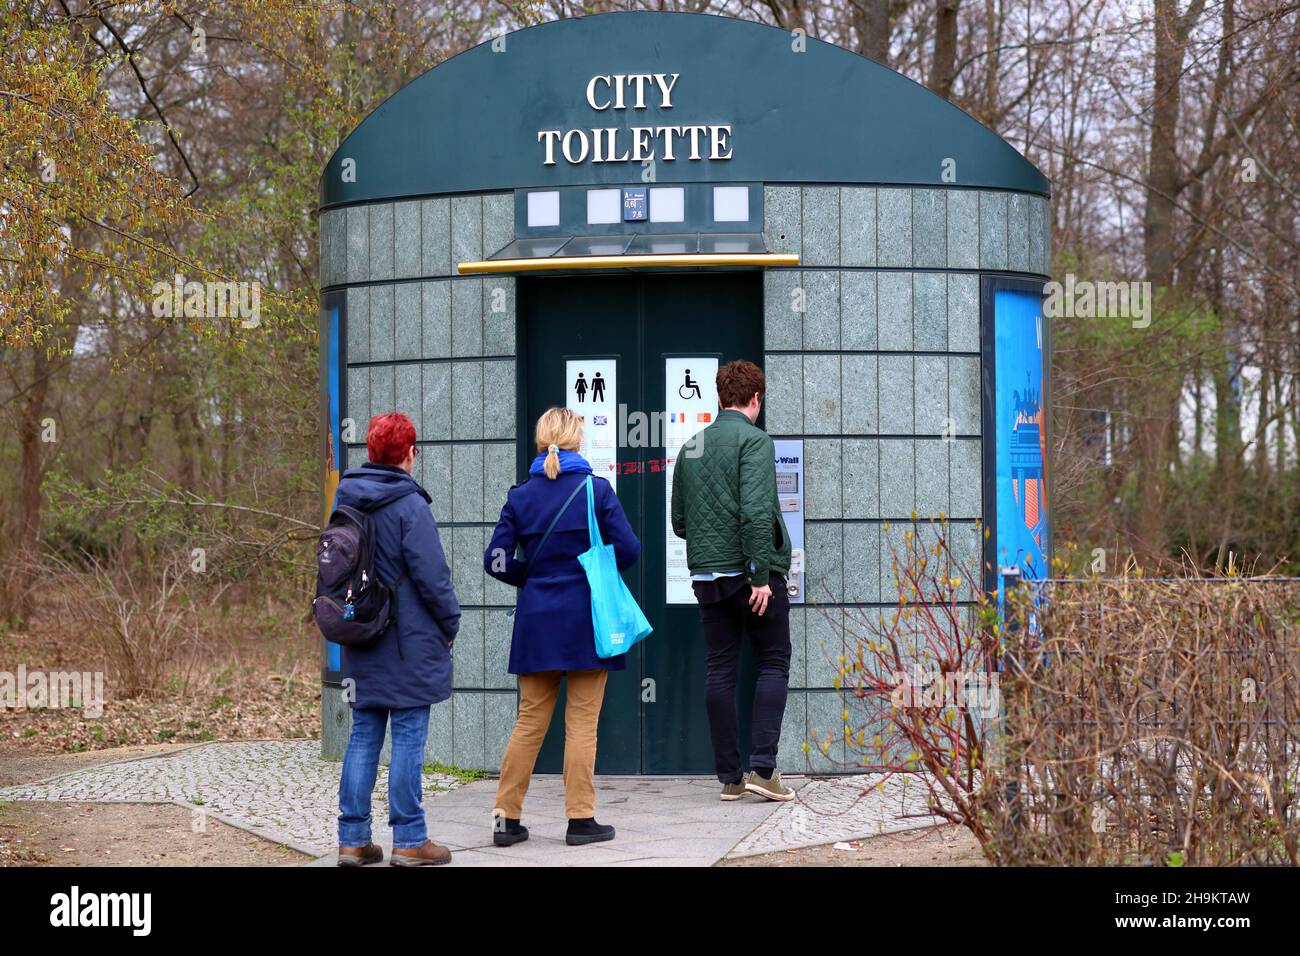 Leute schwirren an einer automatischen Selbstreinigungs-„City Toilette“ in Berlin. Die öffentlichen Toiletten sind kostenpflichtige Toiletten, für die eine Gebühr erhoben wird. Stockfoto